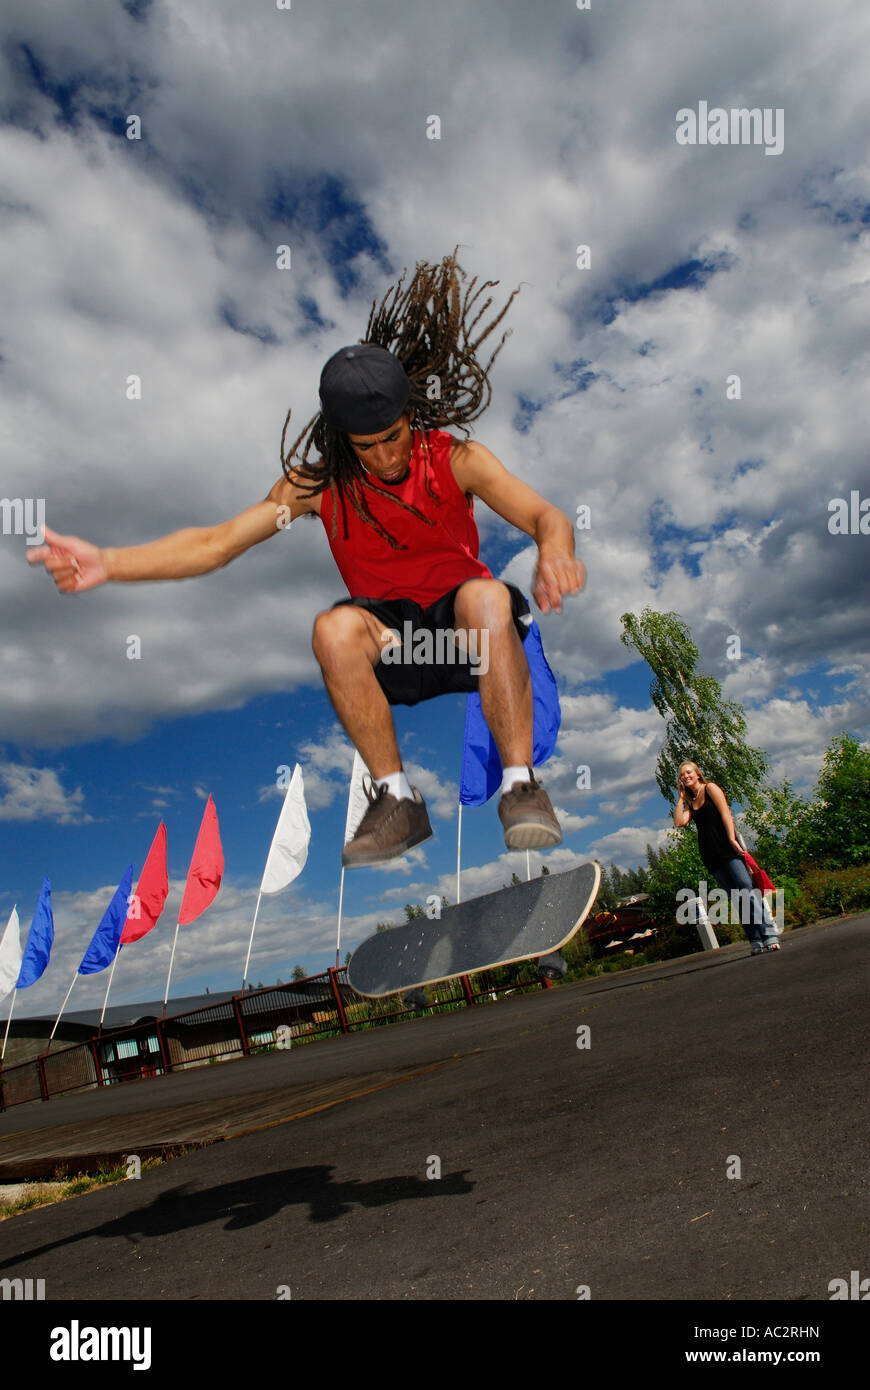 Skateboarder Airborne mâle noir avec des dreadlocks impressionnant fille blanche en arrière-plan Bend Oregon USA Banque D'Images